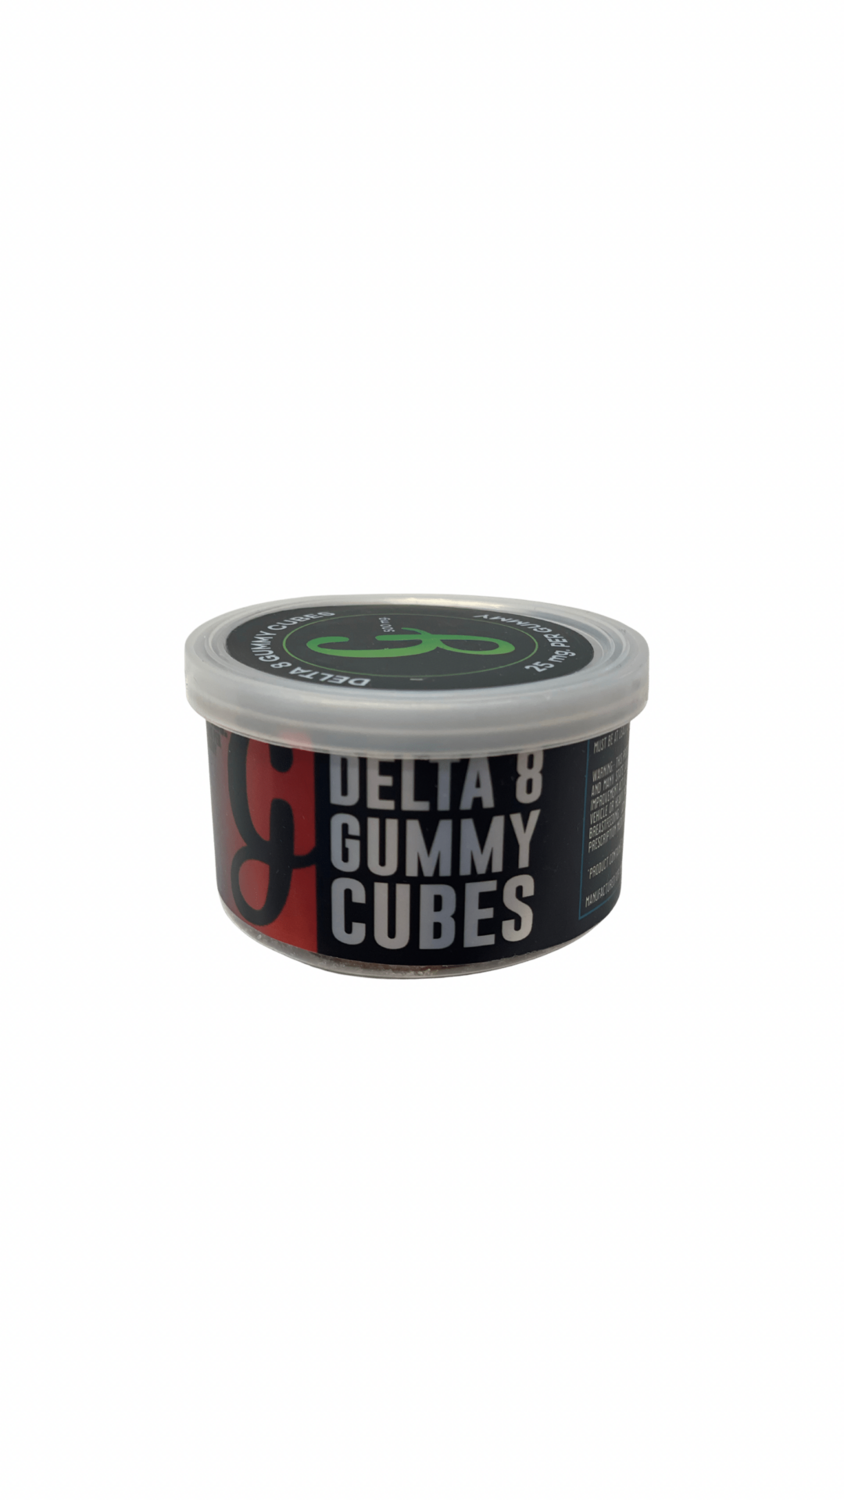 Delta 8 Gummy